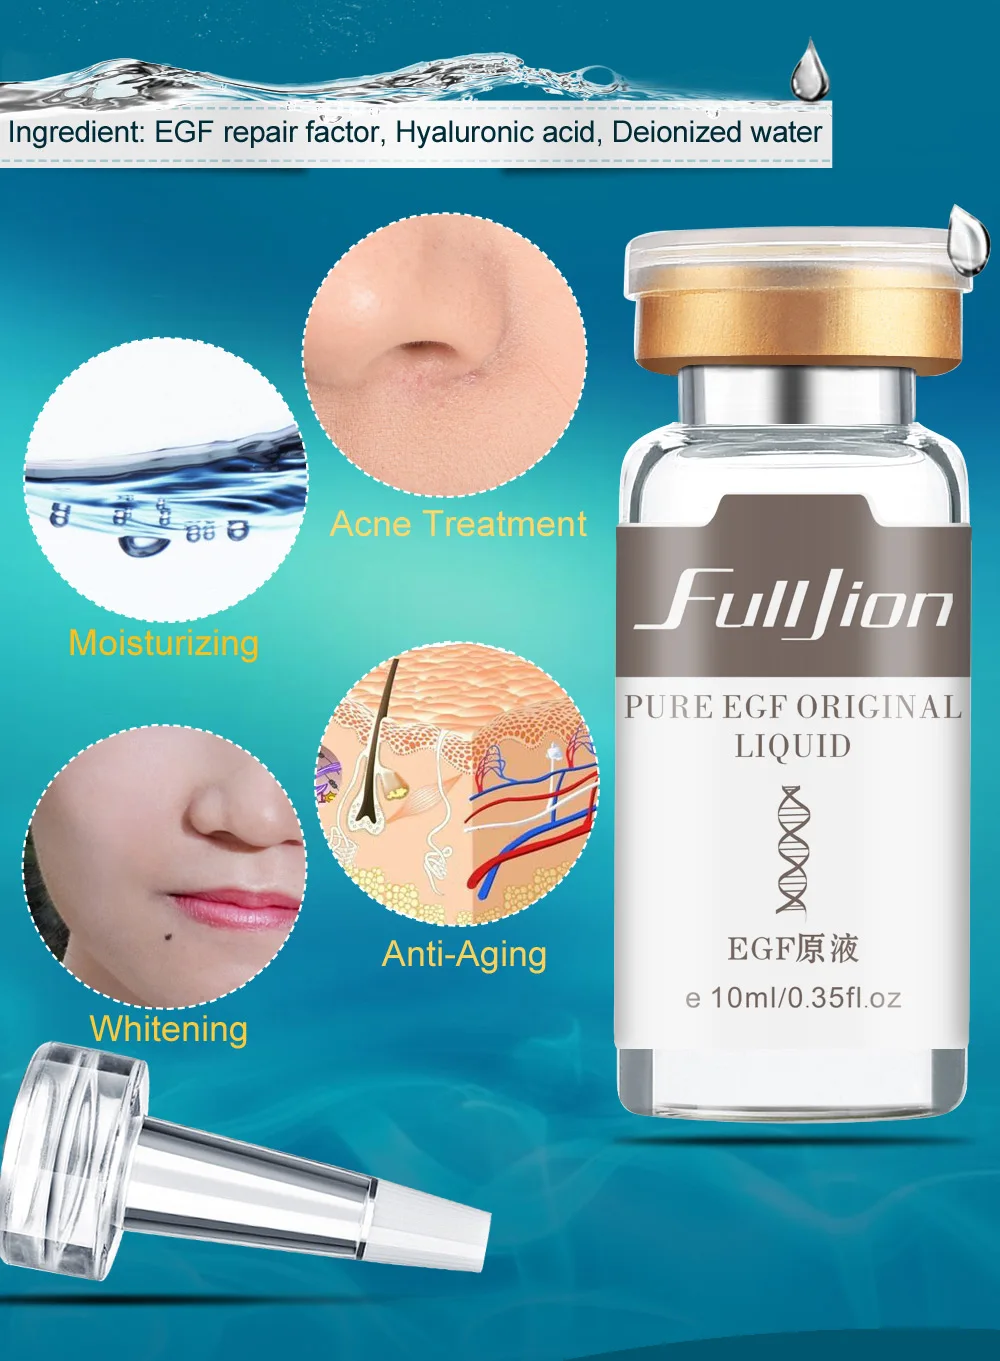 Fulljion ЭФР-сыворотка оригинальная жидкость для удаления красной крови от акне и шрамов эссенция против морщин отбеливающий увлажняющий крем для ухода за кожей